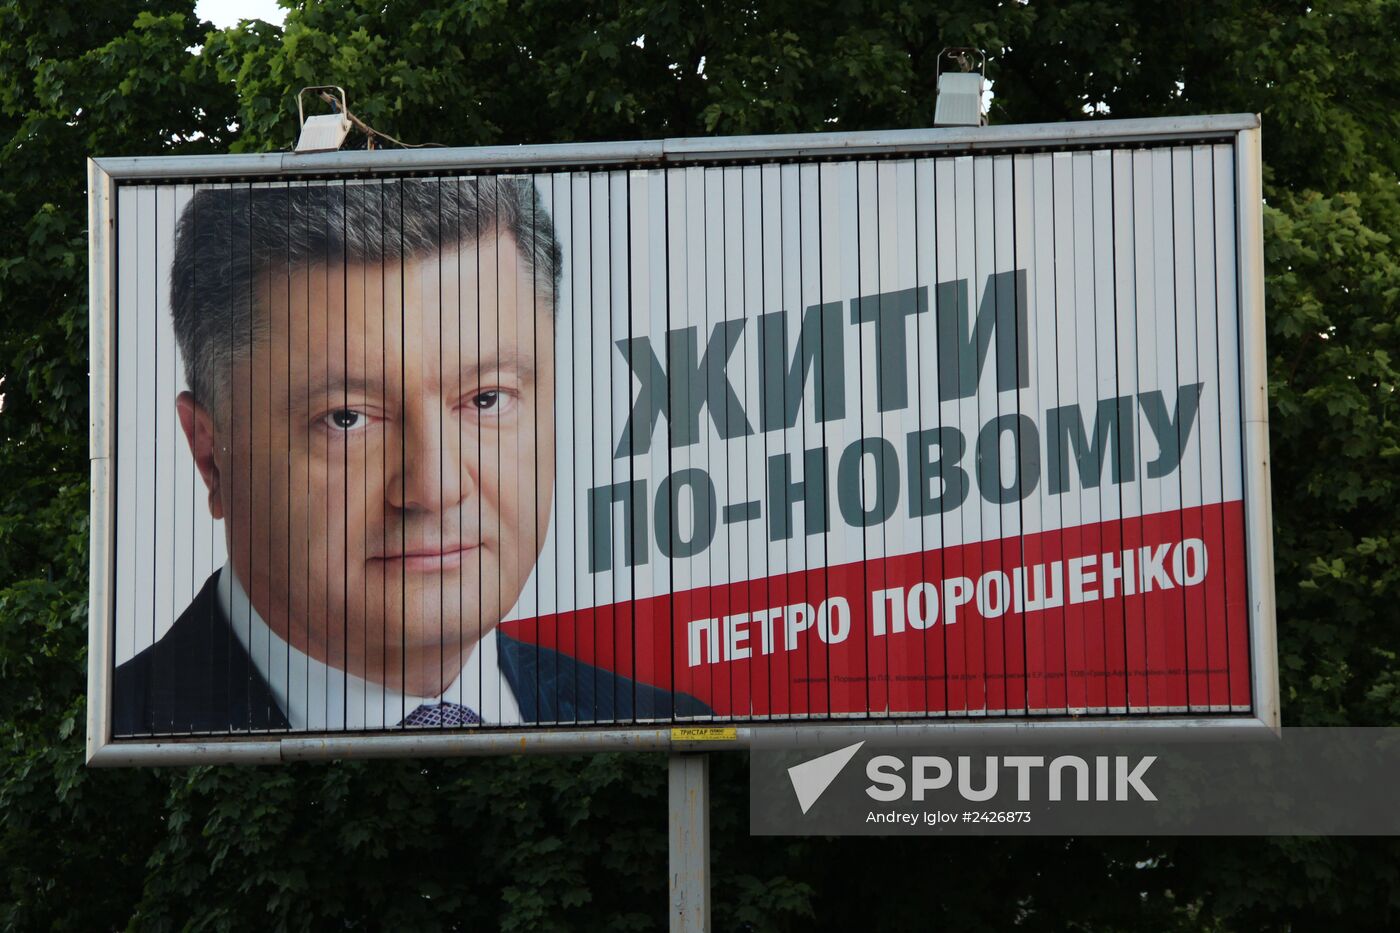 Candidate for Ukrainian presidency Peter Doroshenko's election poster in Dnepropetrovsk